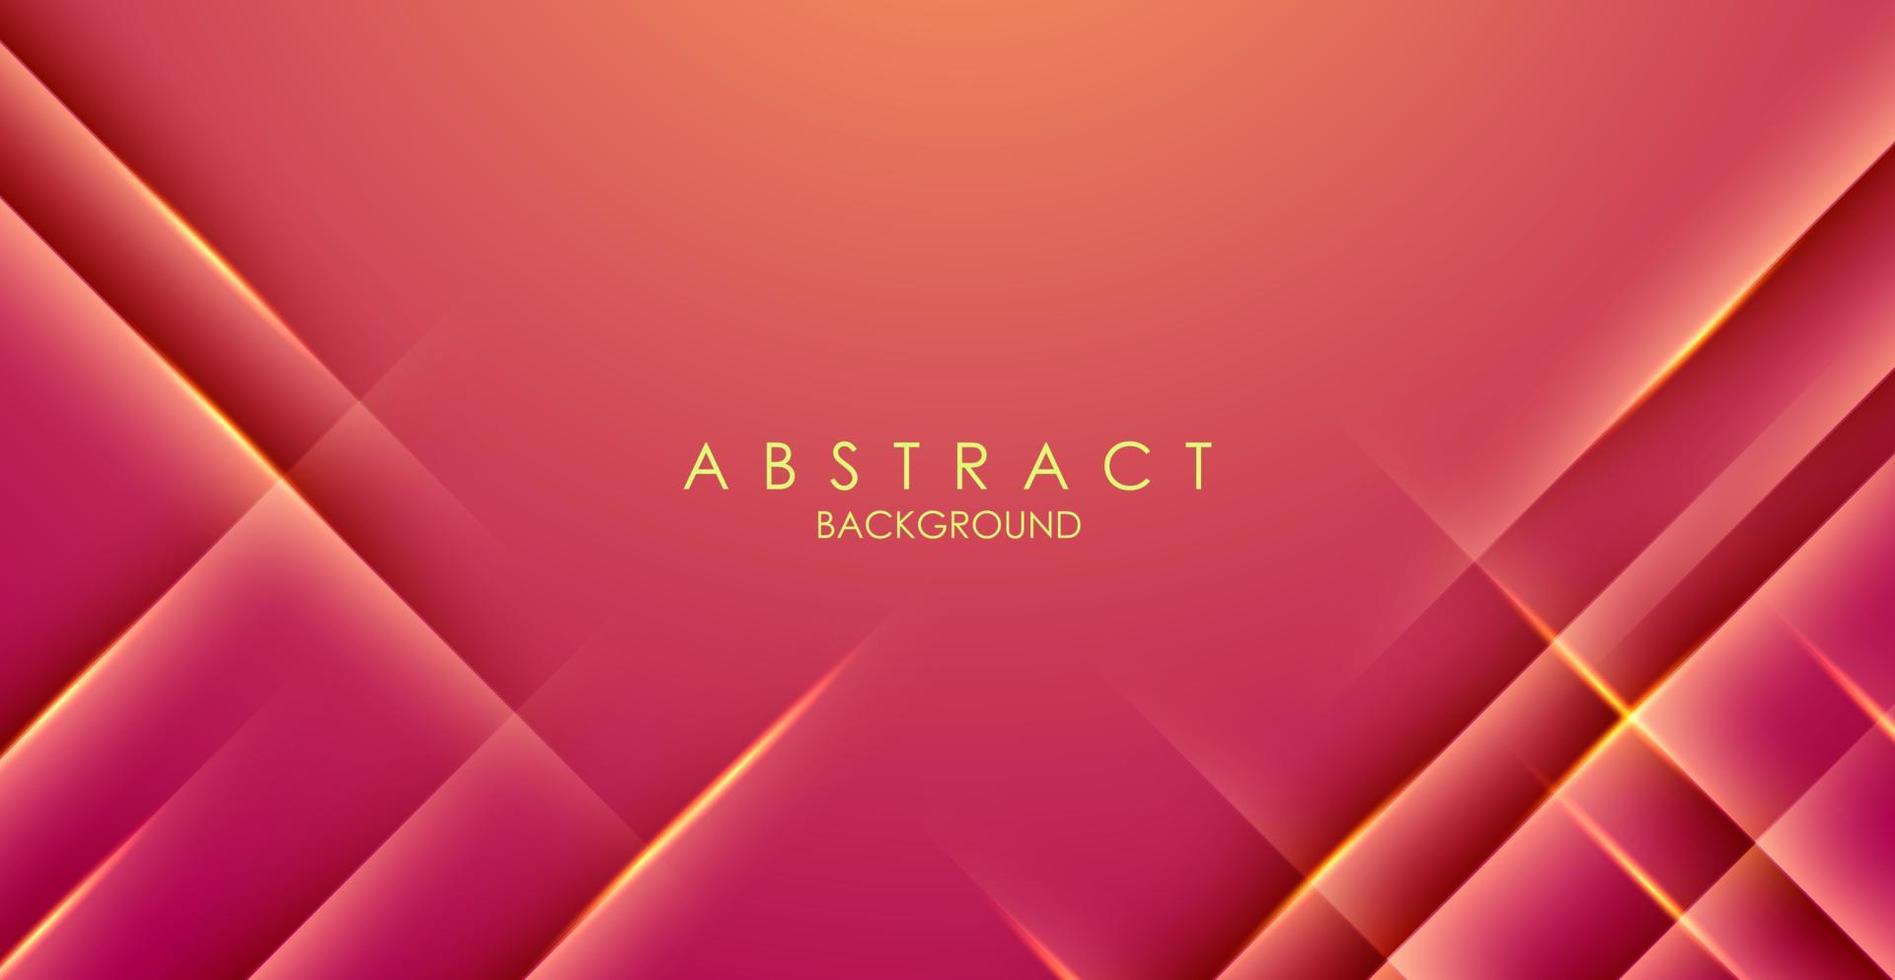 abstracte roze kleurrijke zachte gradiënt met moderne diagonale streepschaduw en lichte achtergrond. eps10 vector